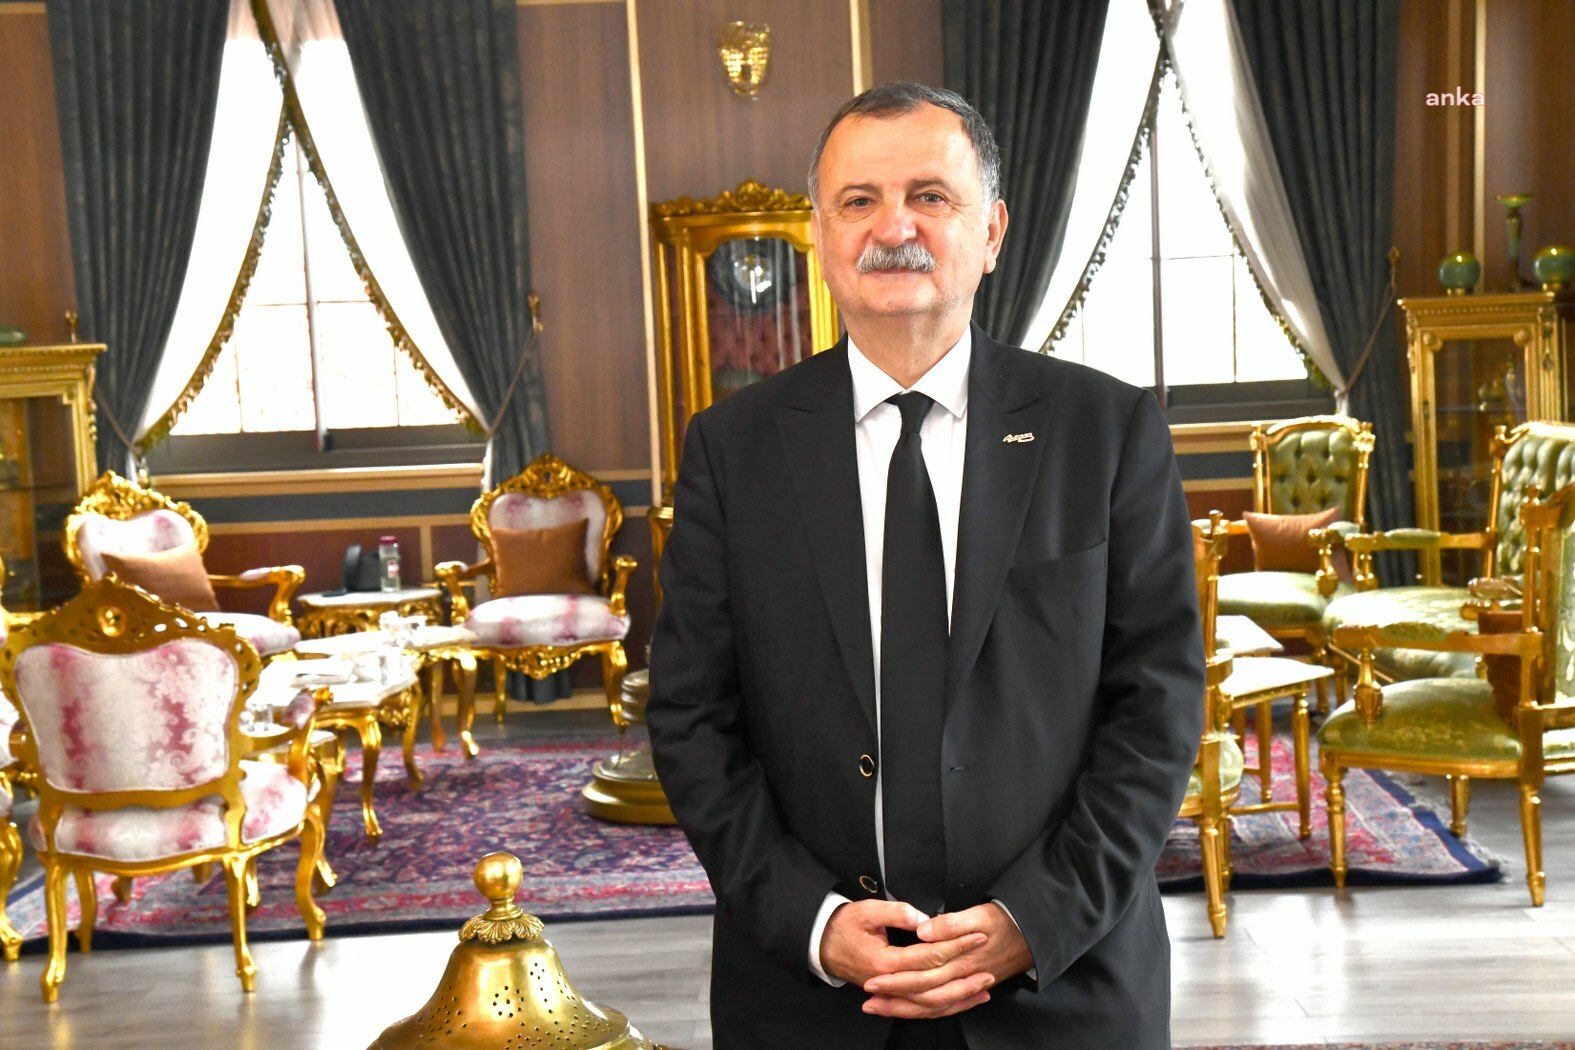 Altın varaklı makam odası yaptıran AKP’li eski başkan eşyaları istemişti: CHP’li başkandan yanıt geldi